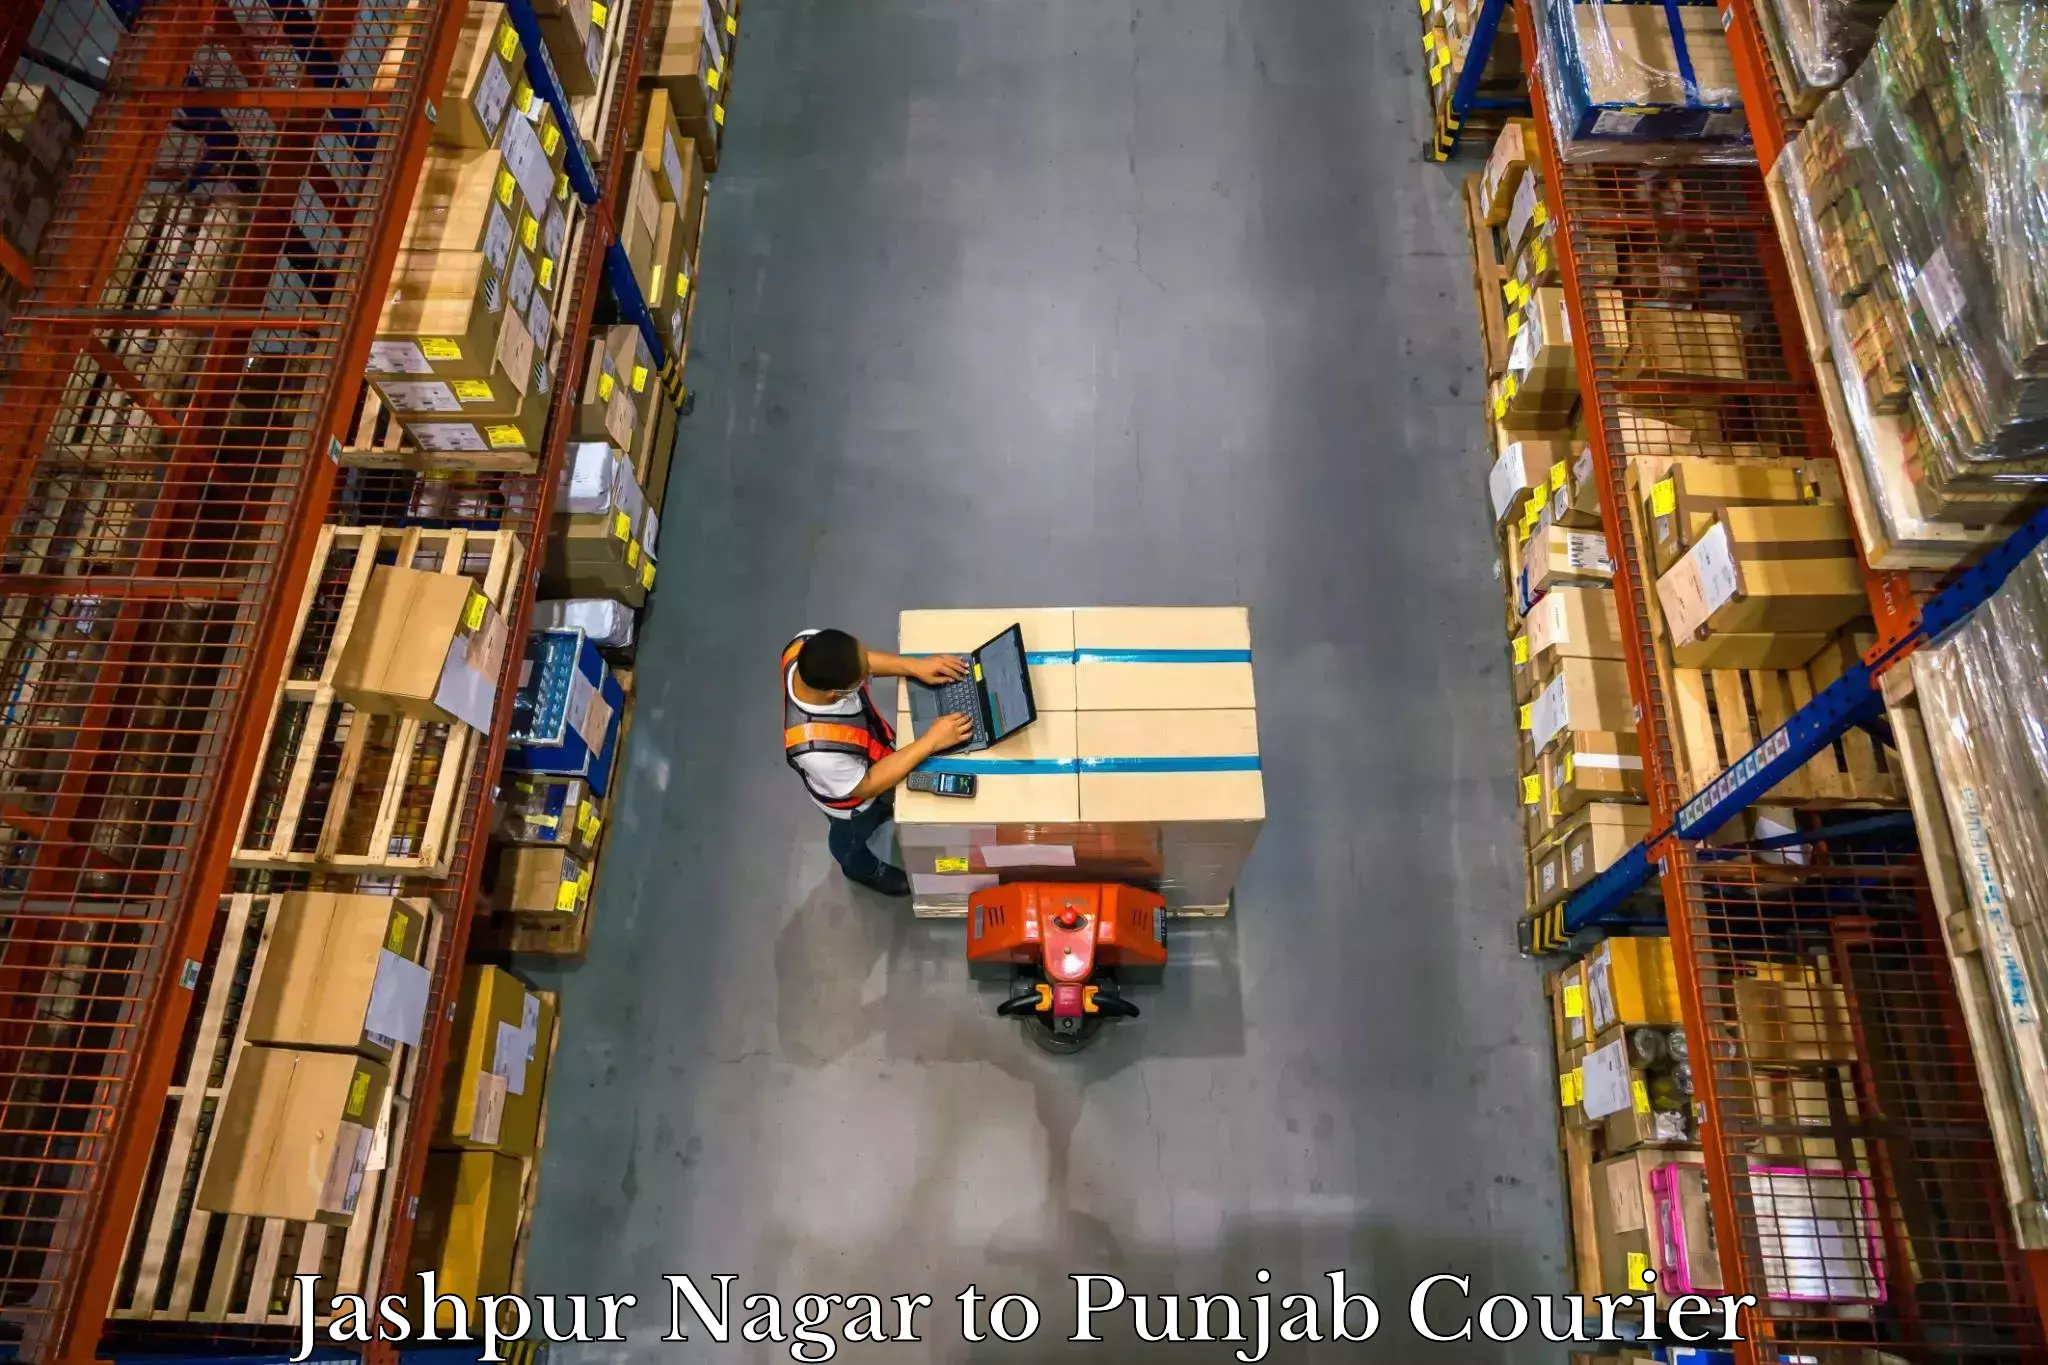 Luggage shipment strategy Jashpur Nagar to Punjab